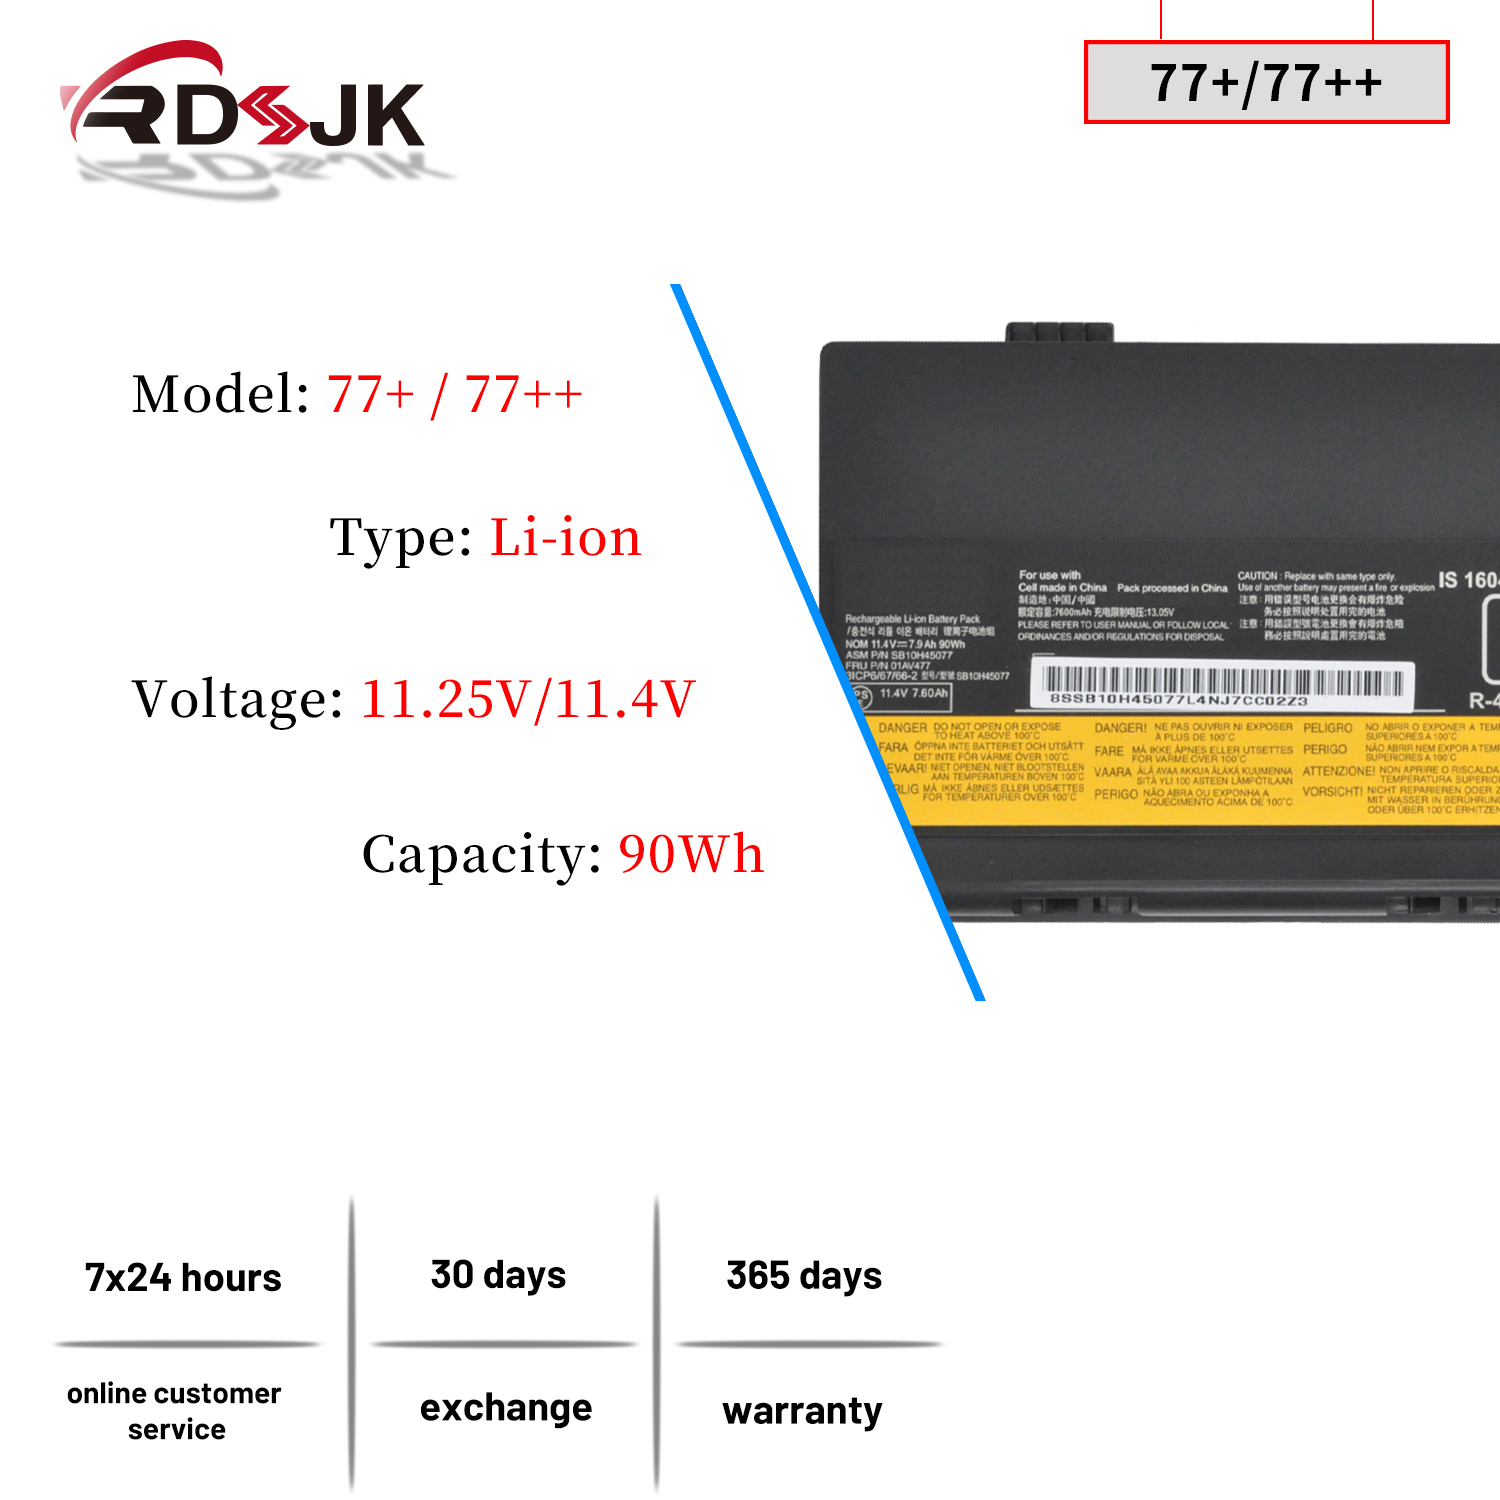 New 77+ 11.25V/11.4V 90Wh 77++ Laptop Battery for Lenovo Thinkpad P50 P51 P52 00NY490 00NY491 00NY492 01AV495 01AV496 SB10K97634 SB10K97635 SB10H45075 SB10H45076 SB10H45077 SB10H45078 01AV477 00NY493 - image 2 of 7